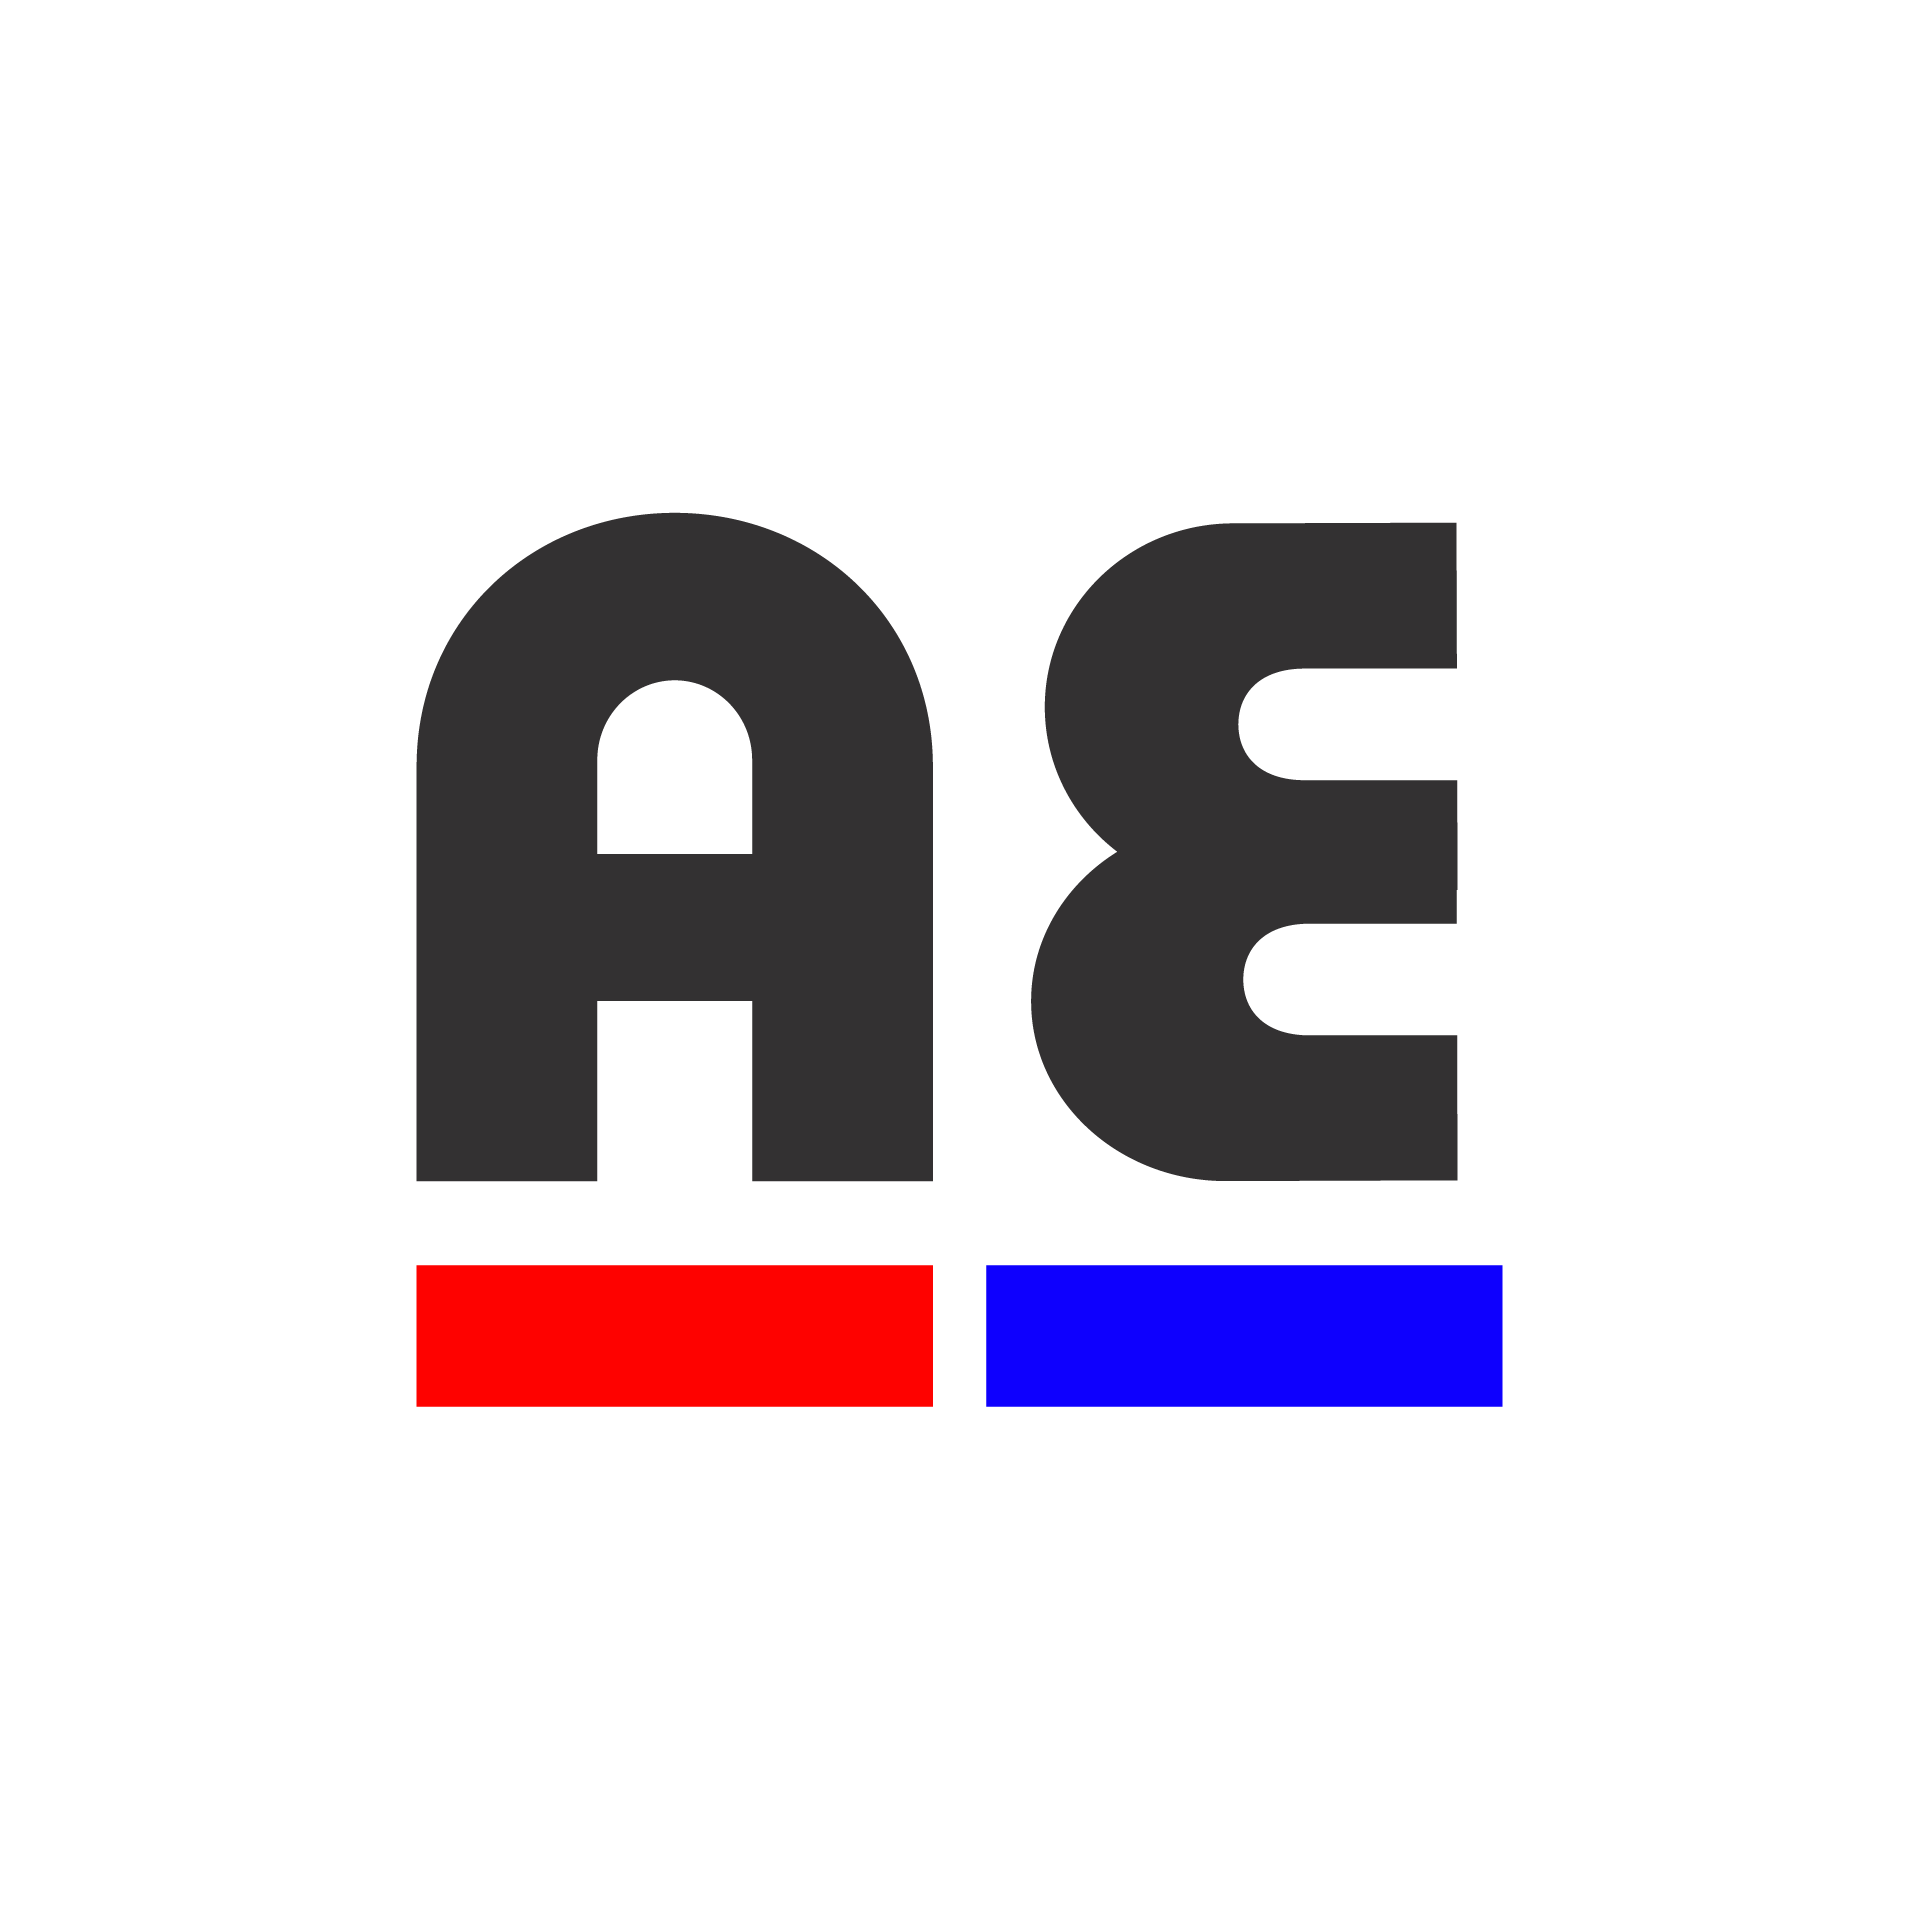 Ashley-edison Asia Pte. Ltd. logo